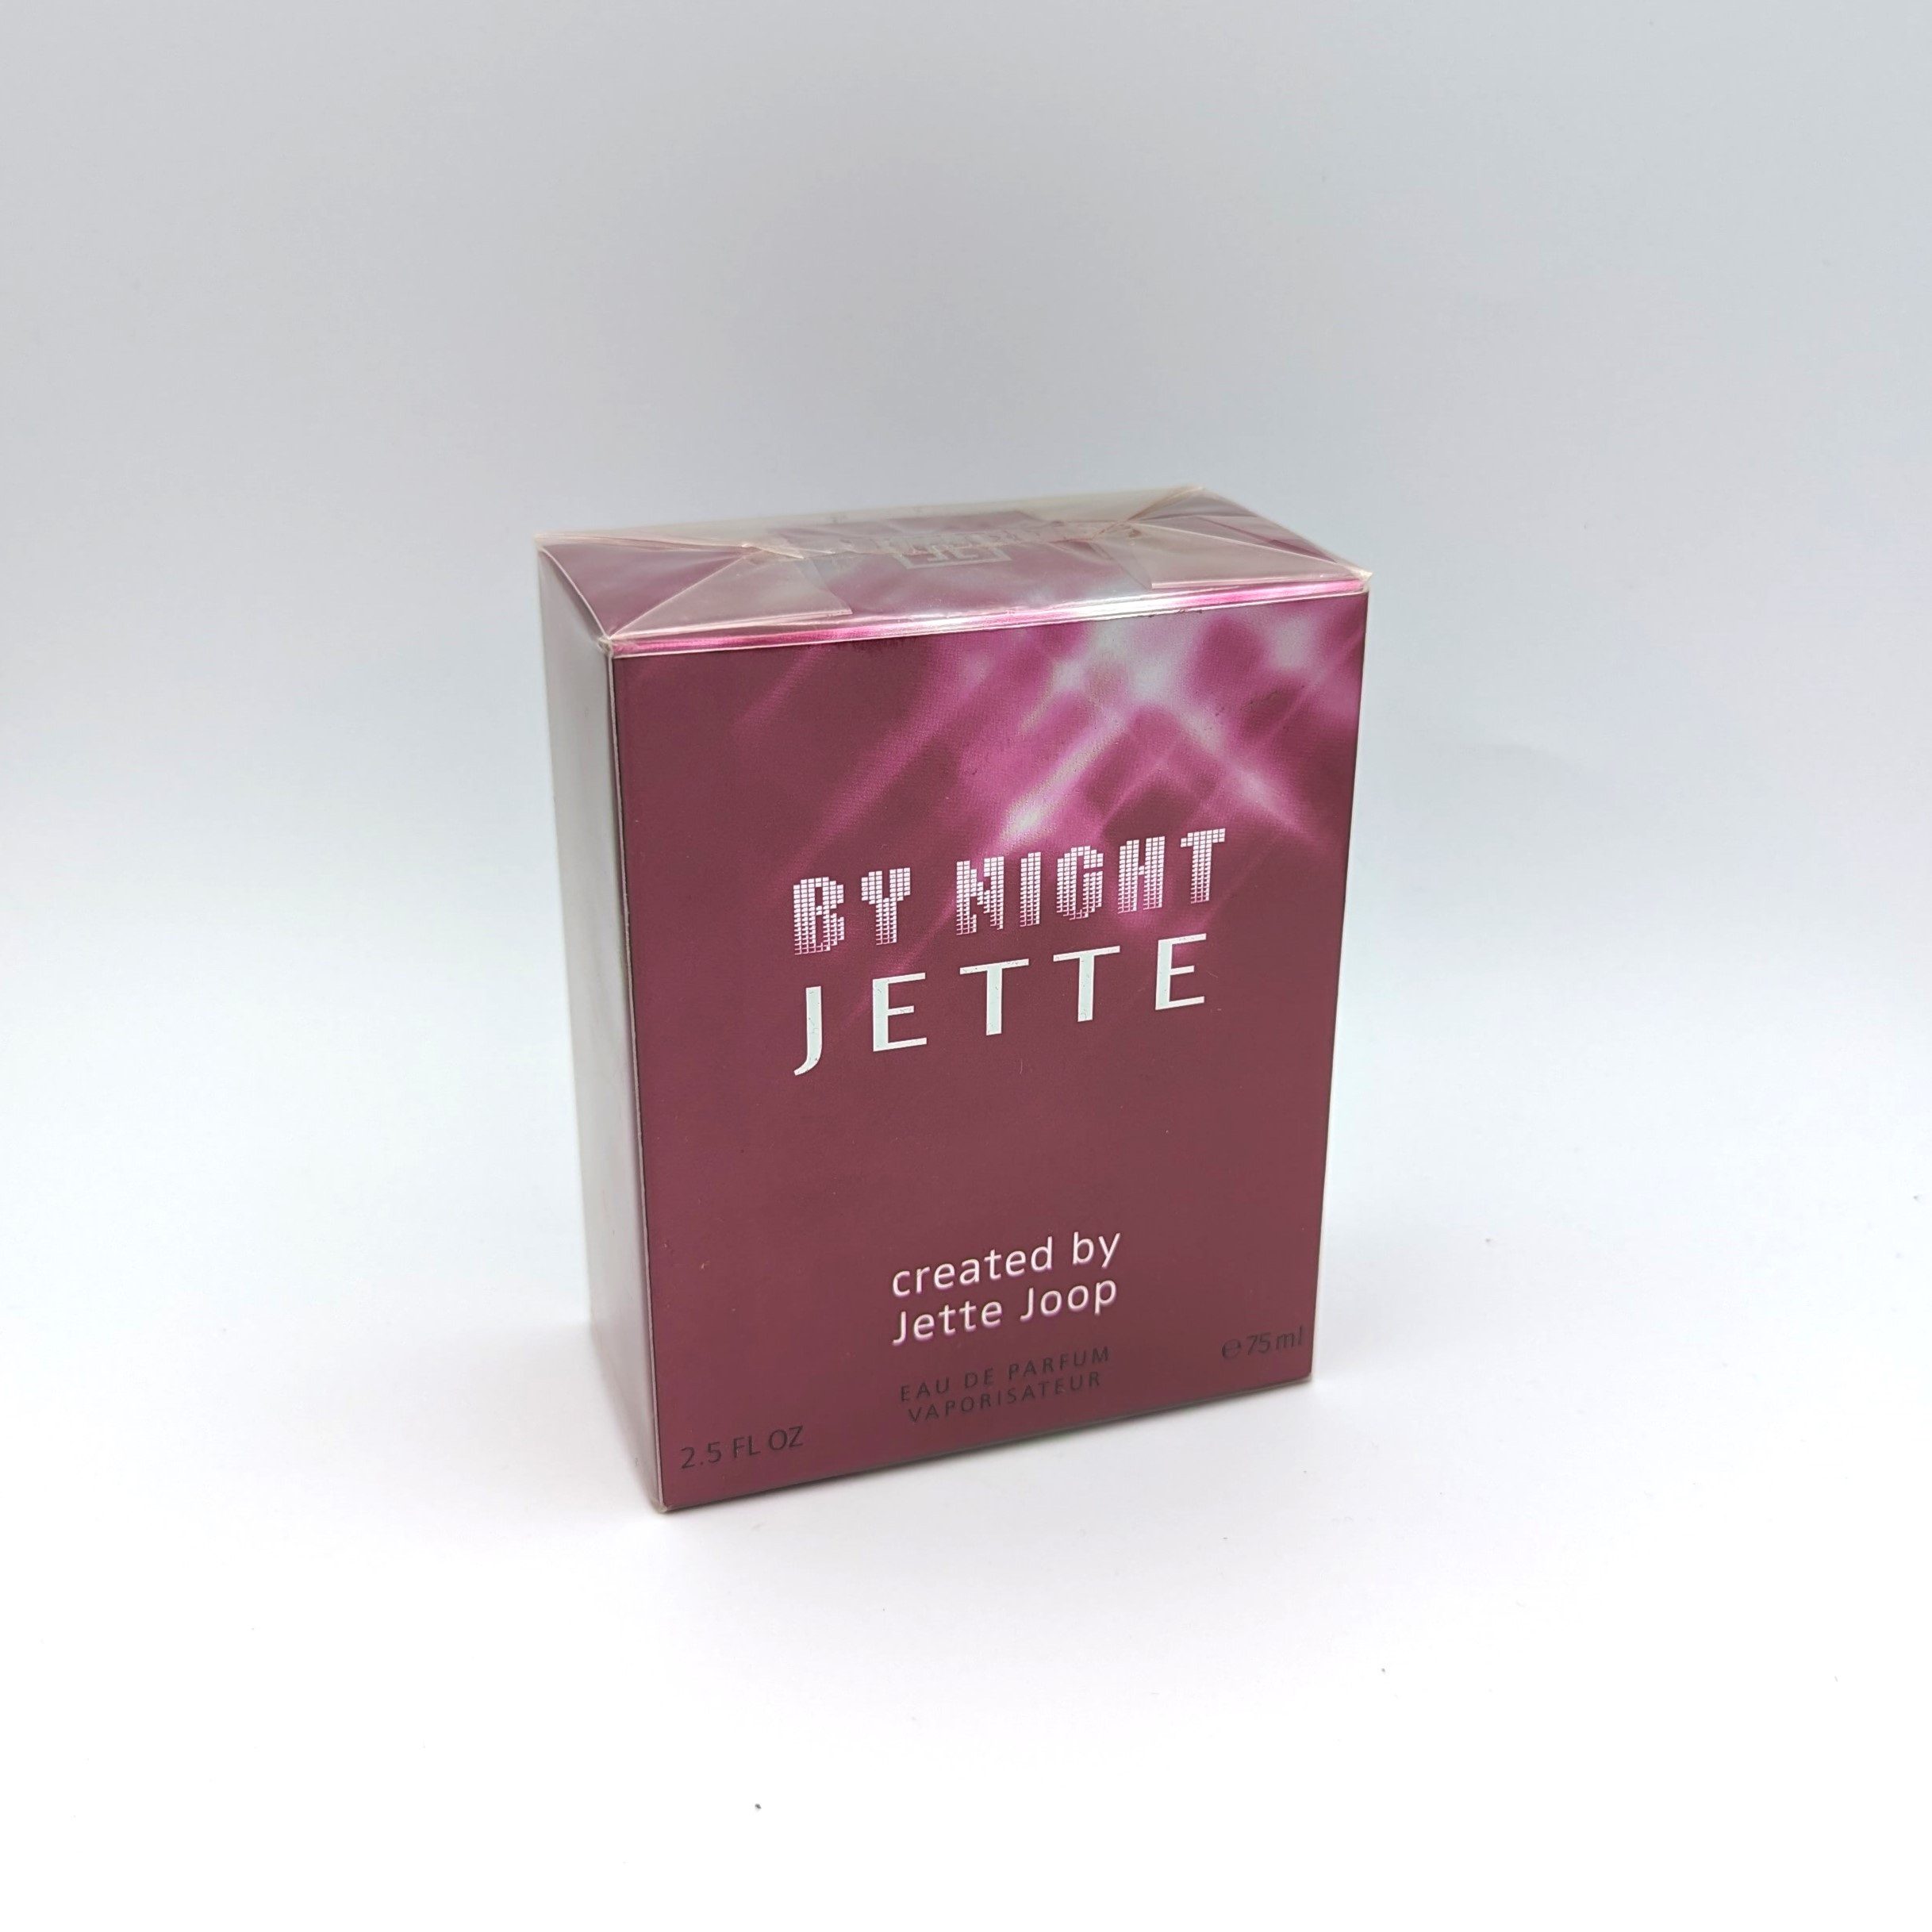 Jette Joop Eau de Parfum By Night Jette created by Jette Joop 75ml